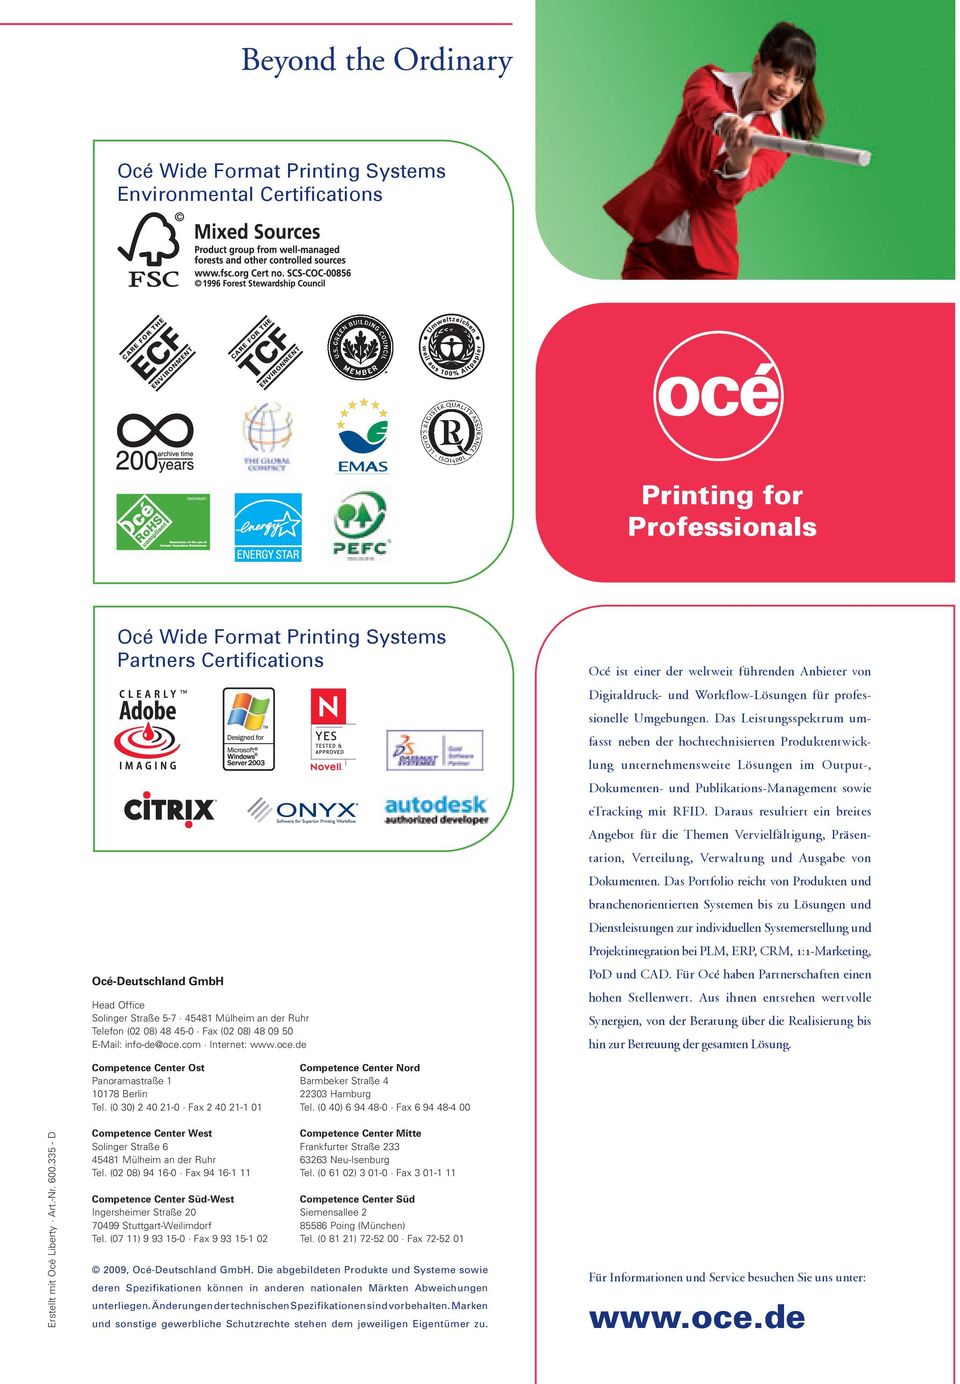 com Internet: www.oce.de ist einer der weltweit führenden Anbieter von Digitaldruck- und Workflow-Lösungen für professio nelle Umgebungen.